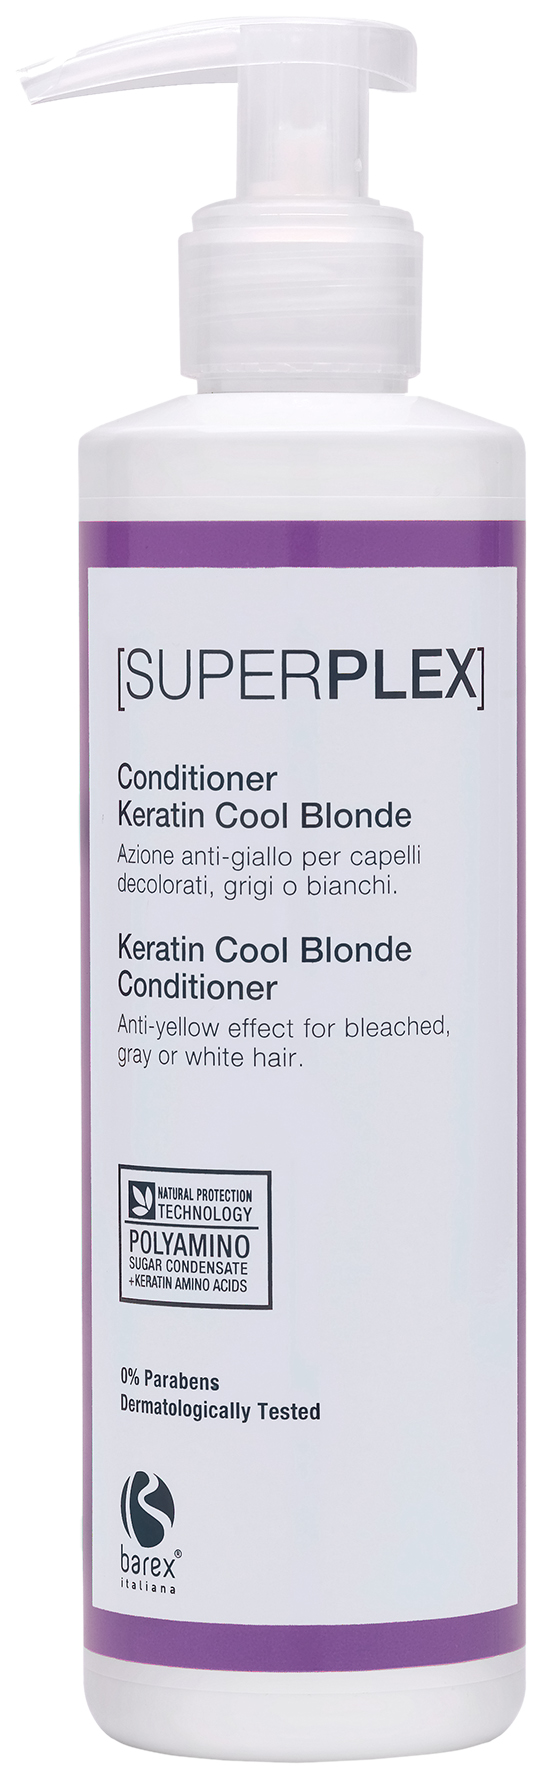 Кондиционер для волос Barex Superplex Для придания холодного оттенка, 200 мл